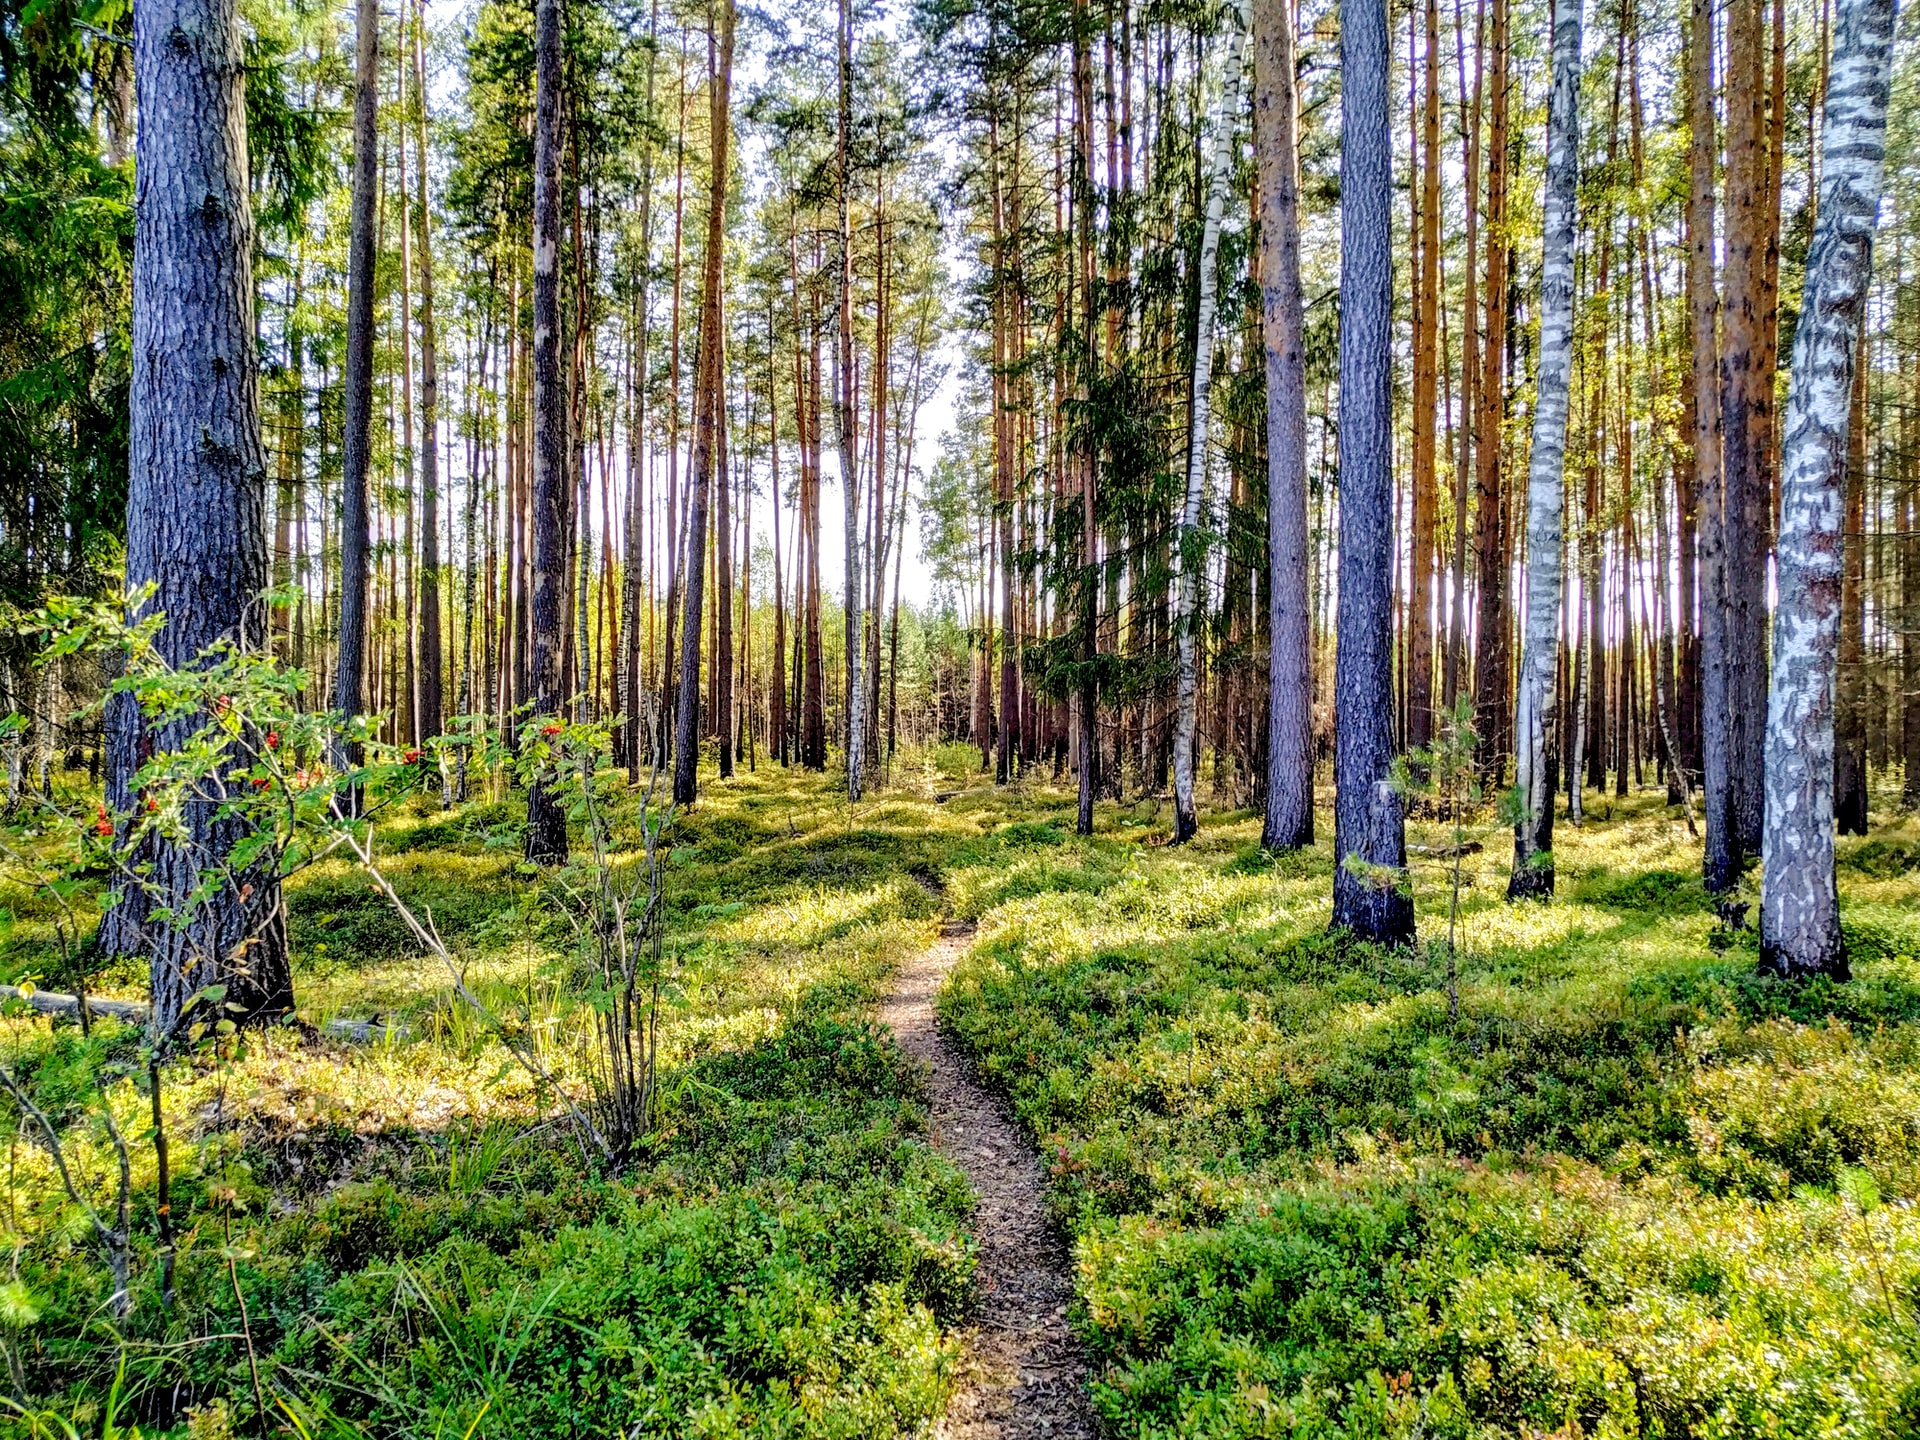 A thin trail through a vivid green forest.